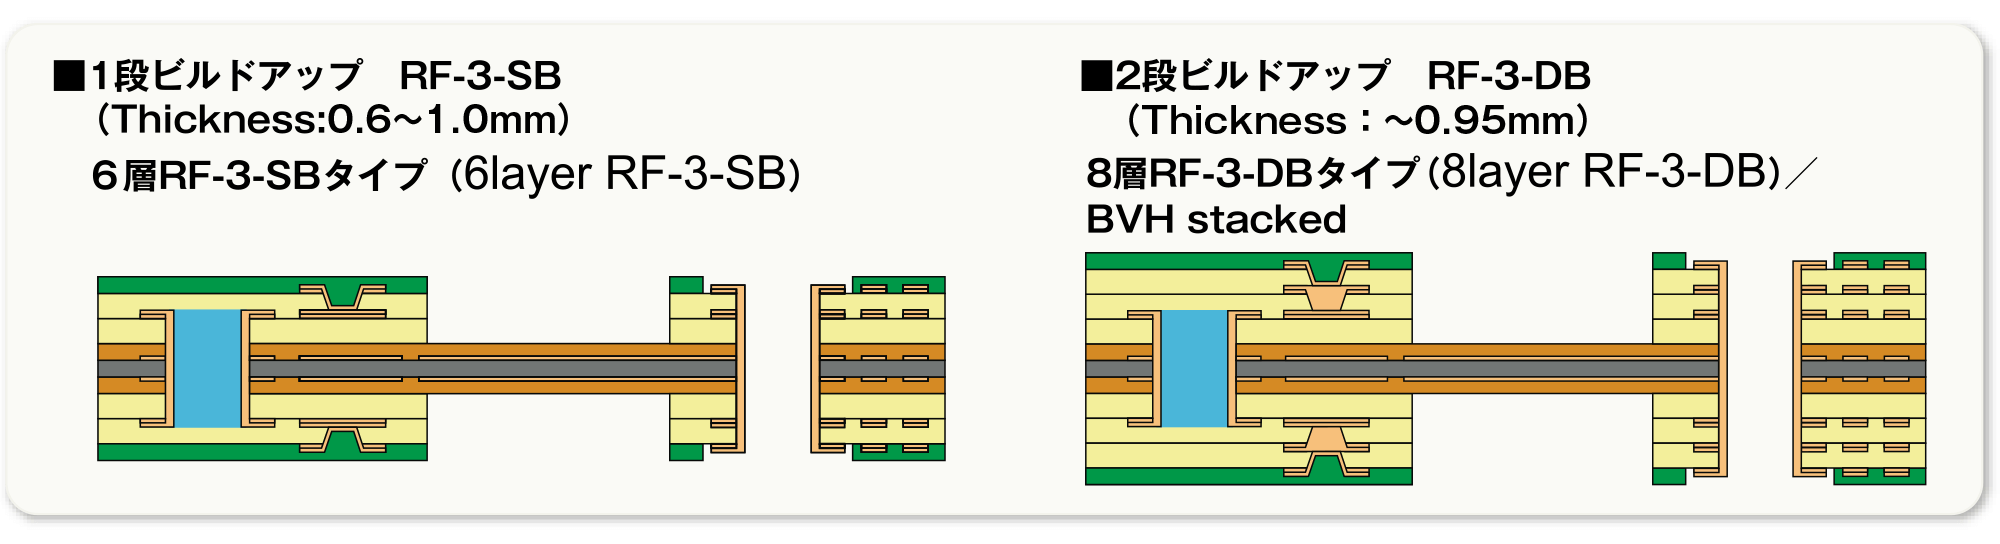 ■1段ビルドアップ RF-3-SB（Thickness:0.6〜1.0mm）、6層RF-3-SBタイプ（6layer RF-3-SB） ■2段ビルドアップ RF-3-DB（Thickness:〜0.95mm）、8層RF-3-DBタイプ（8layer RF-3-DB）/BVH stacked